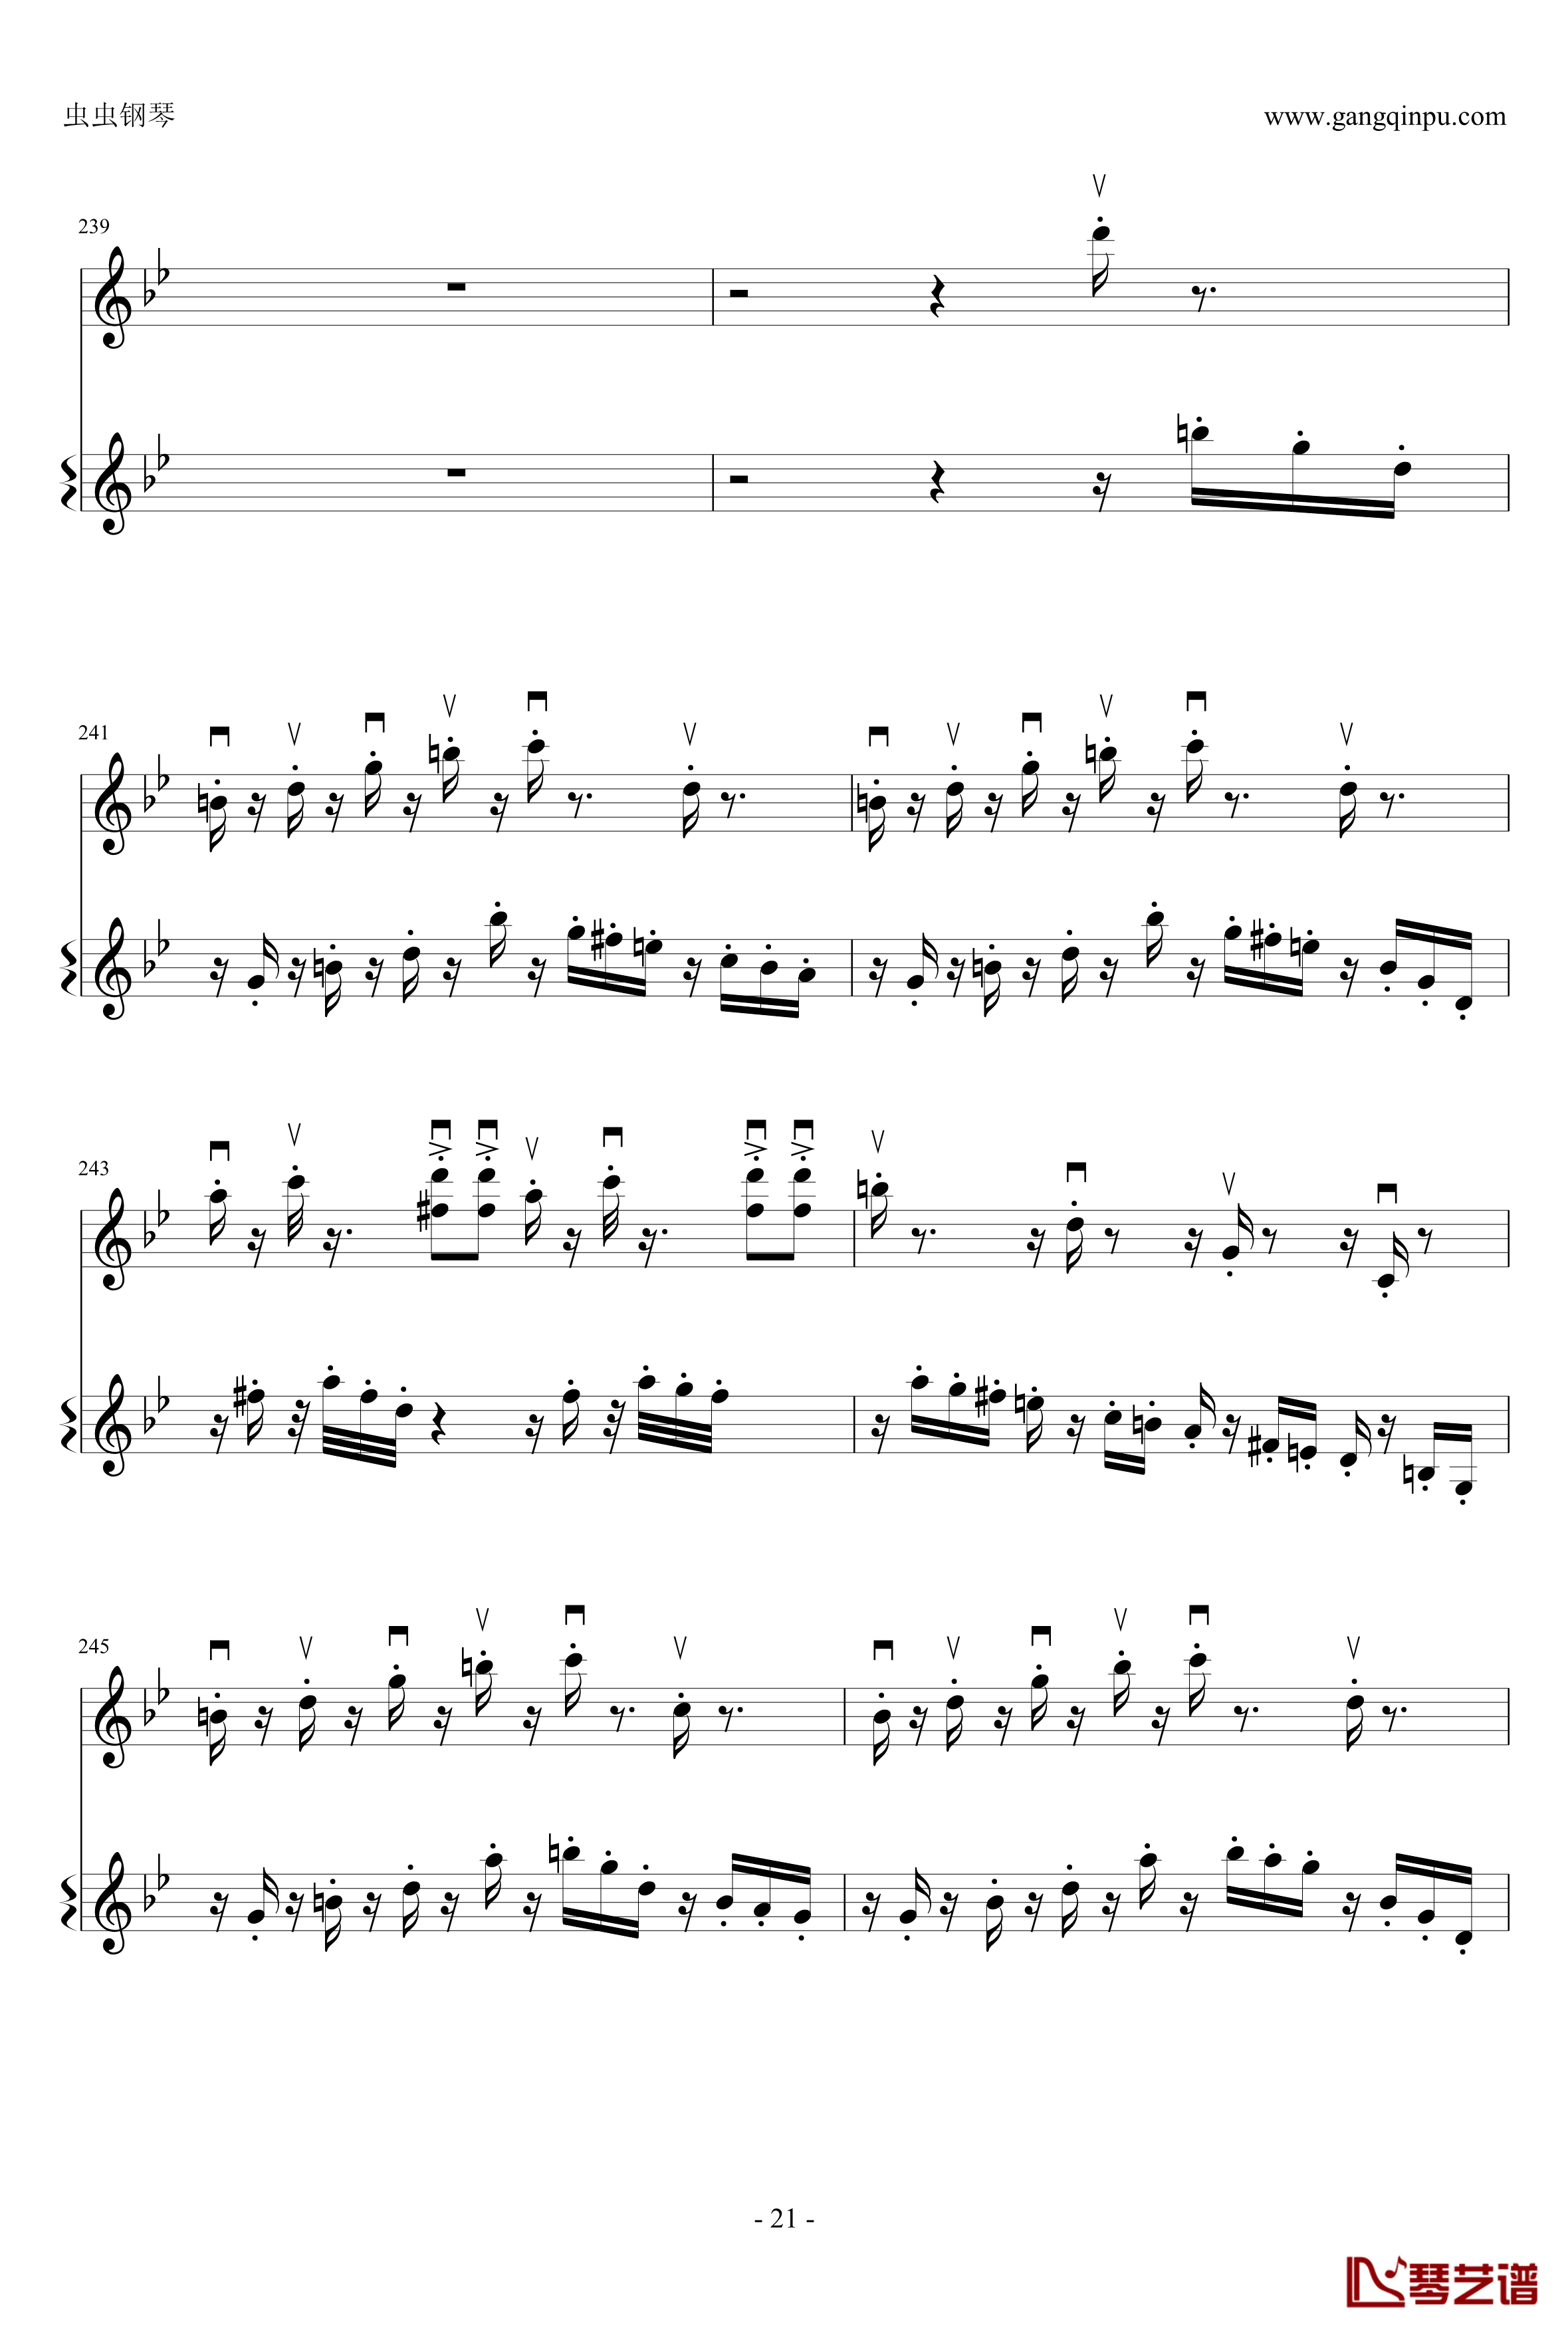 意大利国歌钢琴谱-变奏曲修改版-DXF21